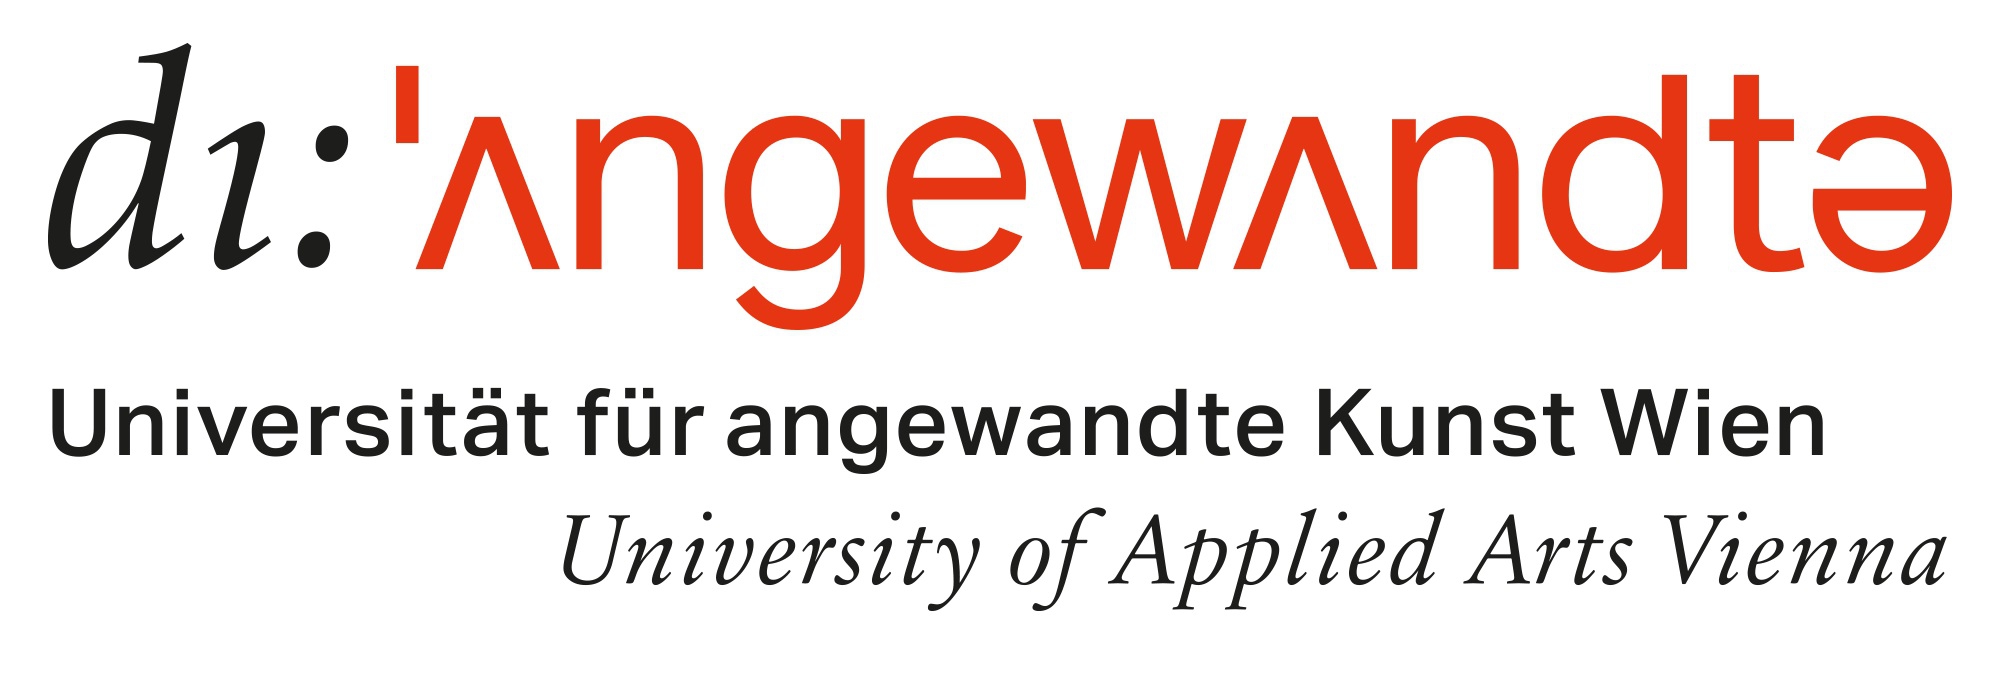 Angewandte - Logo Rechteck ©Universität für angew. Kunst Wien